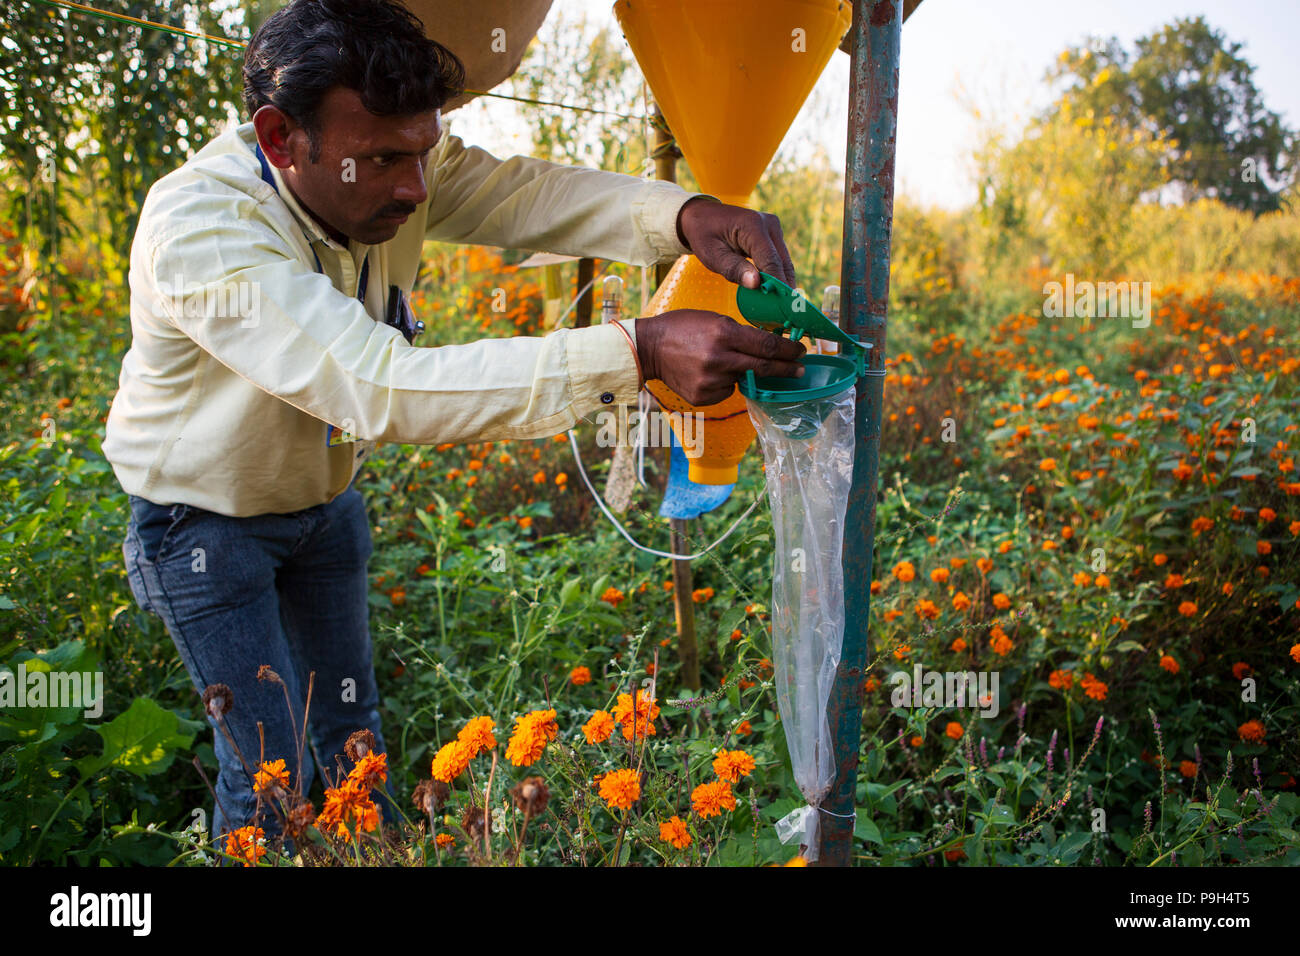 Ein Mann prüft einen Insektenfalle, um mehr über die verschiedenen Tiere und Insekten Pflanzen bei Vasudha organische Solution Center ziehen lernen. Stockfoto